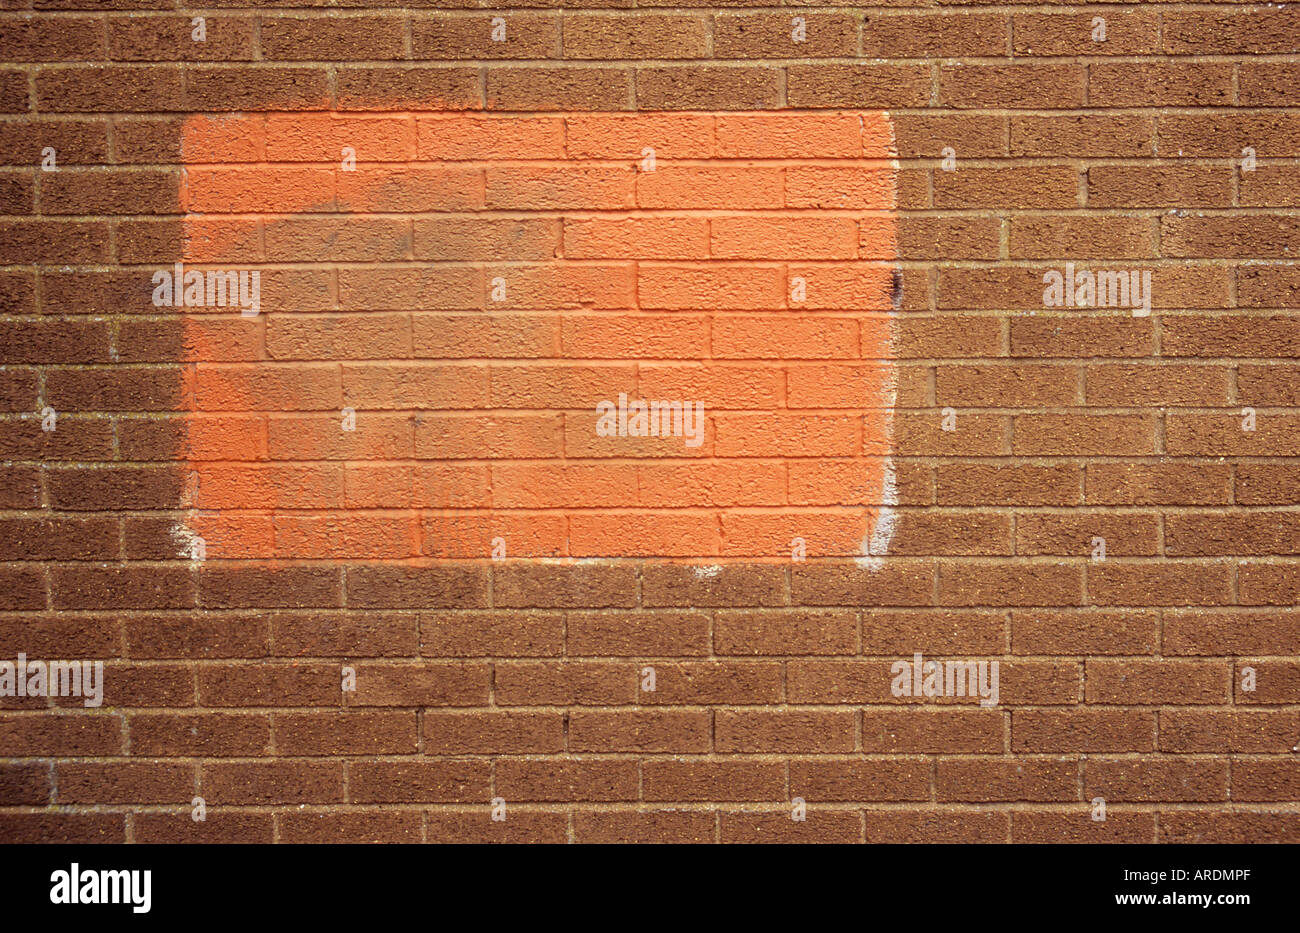 Teil eine strukturlose hässliche Mauer mit einem Patch von nicht übereinstimmenden roter Farbe Graffiti zu verschleiern versucht Stockfoto